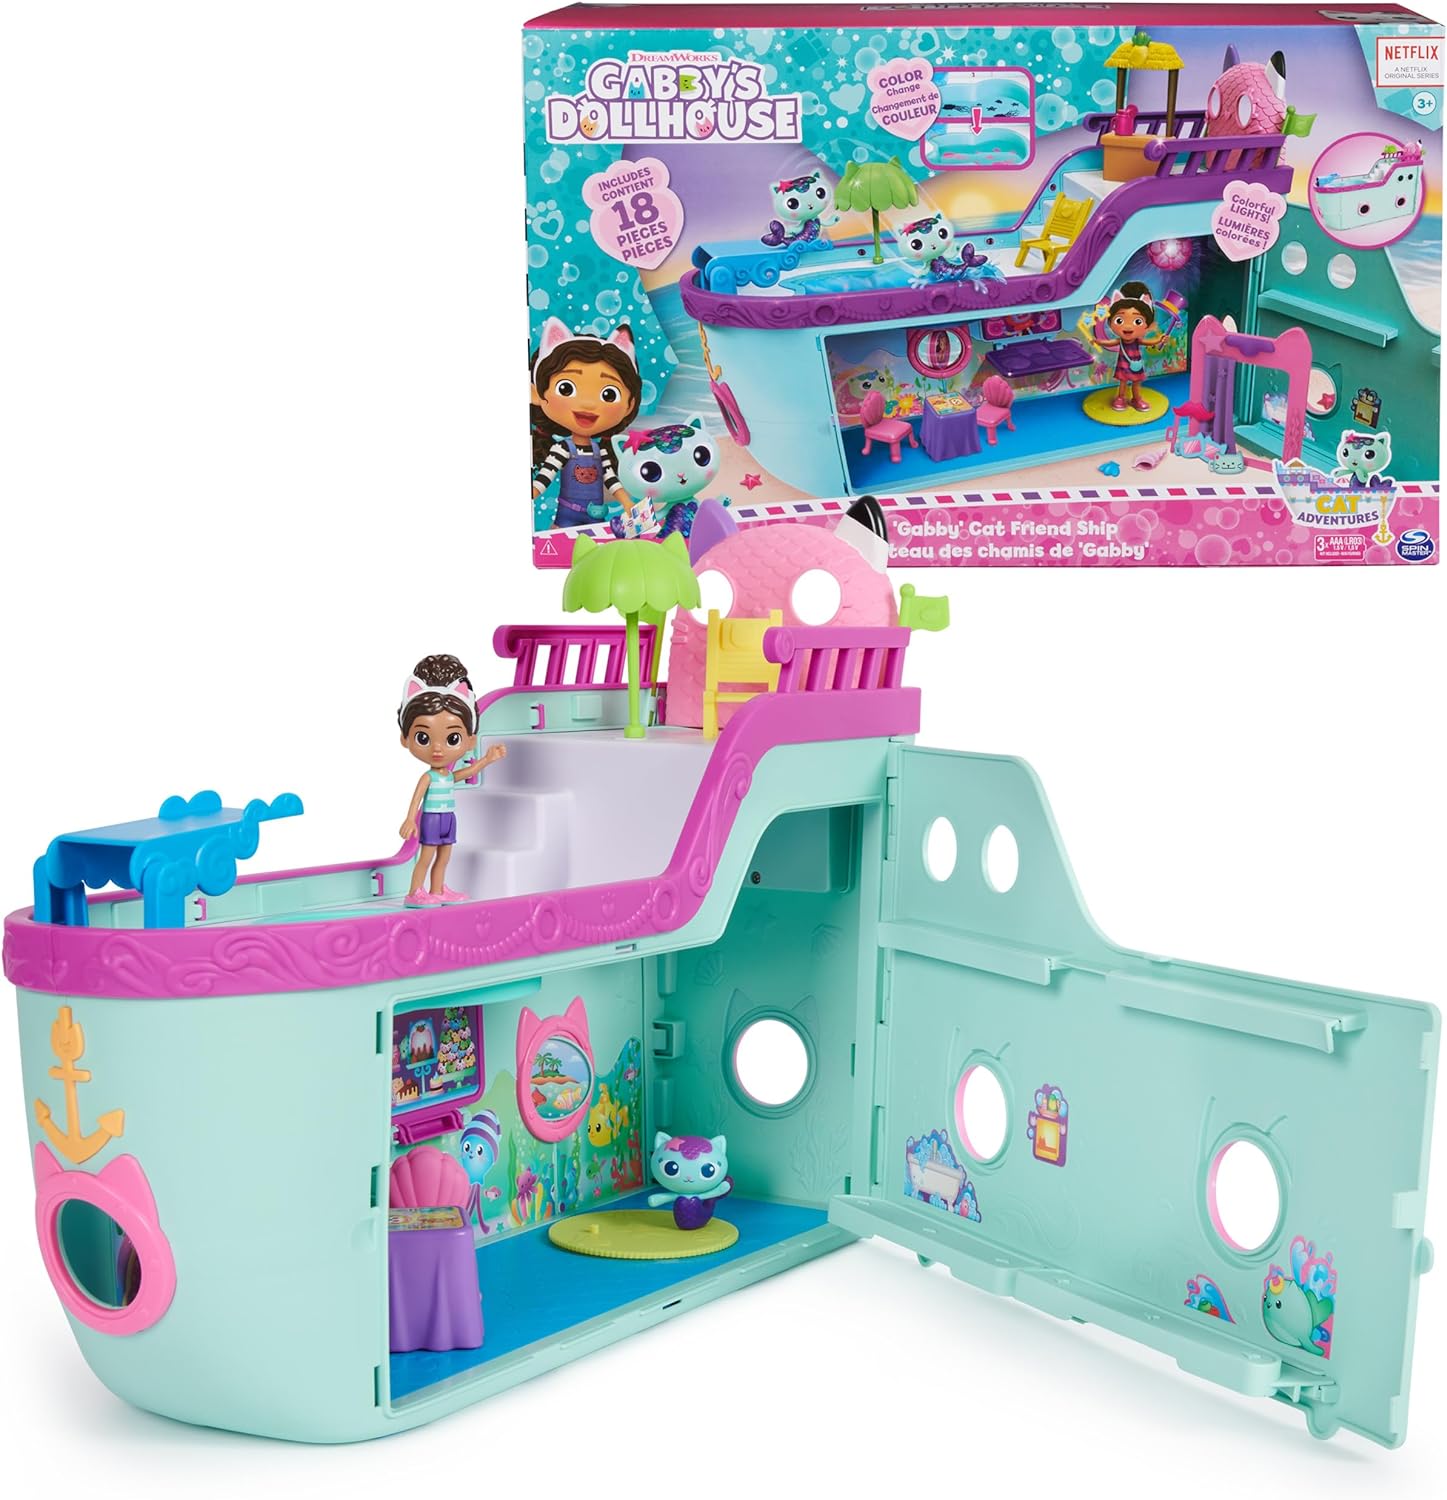 Gabby's Dollhouse Gabby Cat Friend Ship クルーズ船おもちゃ フィギュア2体付き サプライズおもちゃ＆ドールハウス・アクセサリー 対象年齢3歳以上 女の子&男の子向け 子供のおもちゃ プレイセット 6066583